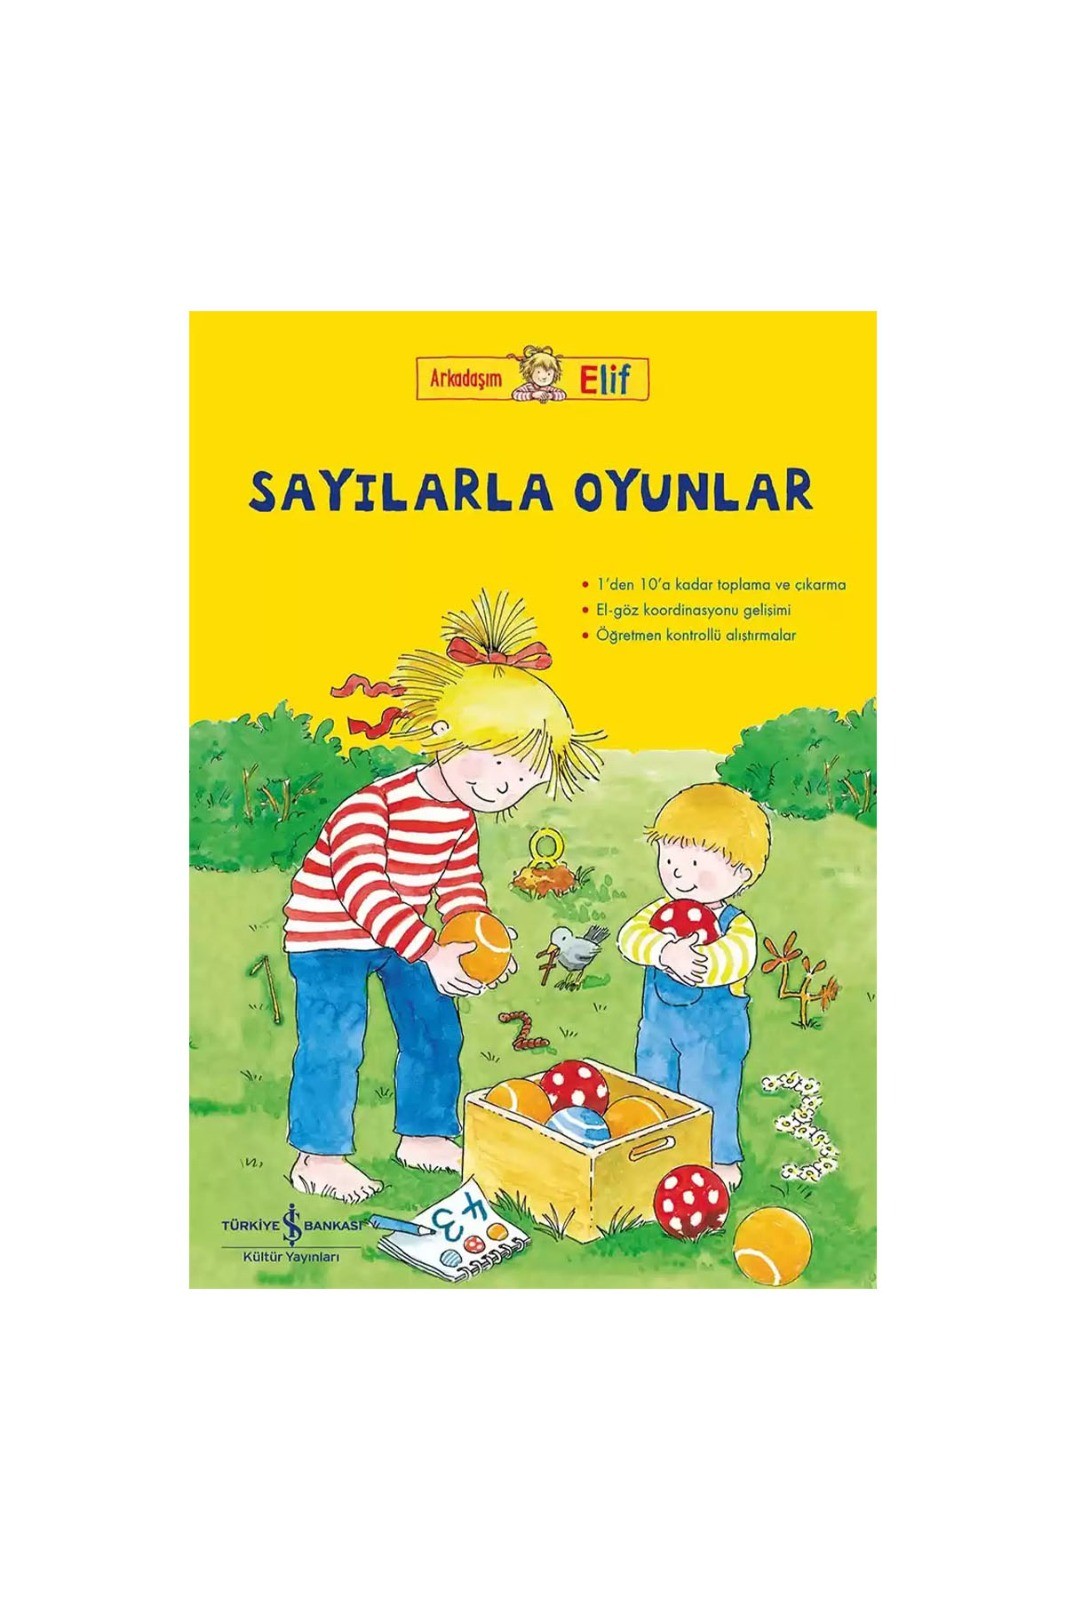 Türkiye İş Bankası Kültür Yayınları Arkadaşım Elif – Sayılarla Oyunlar